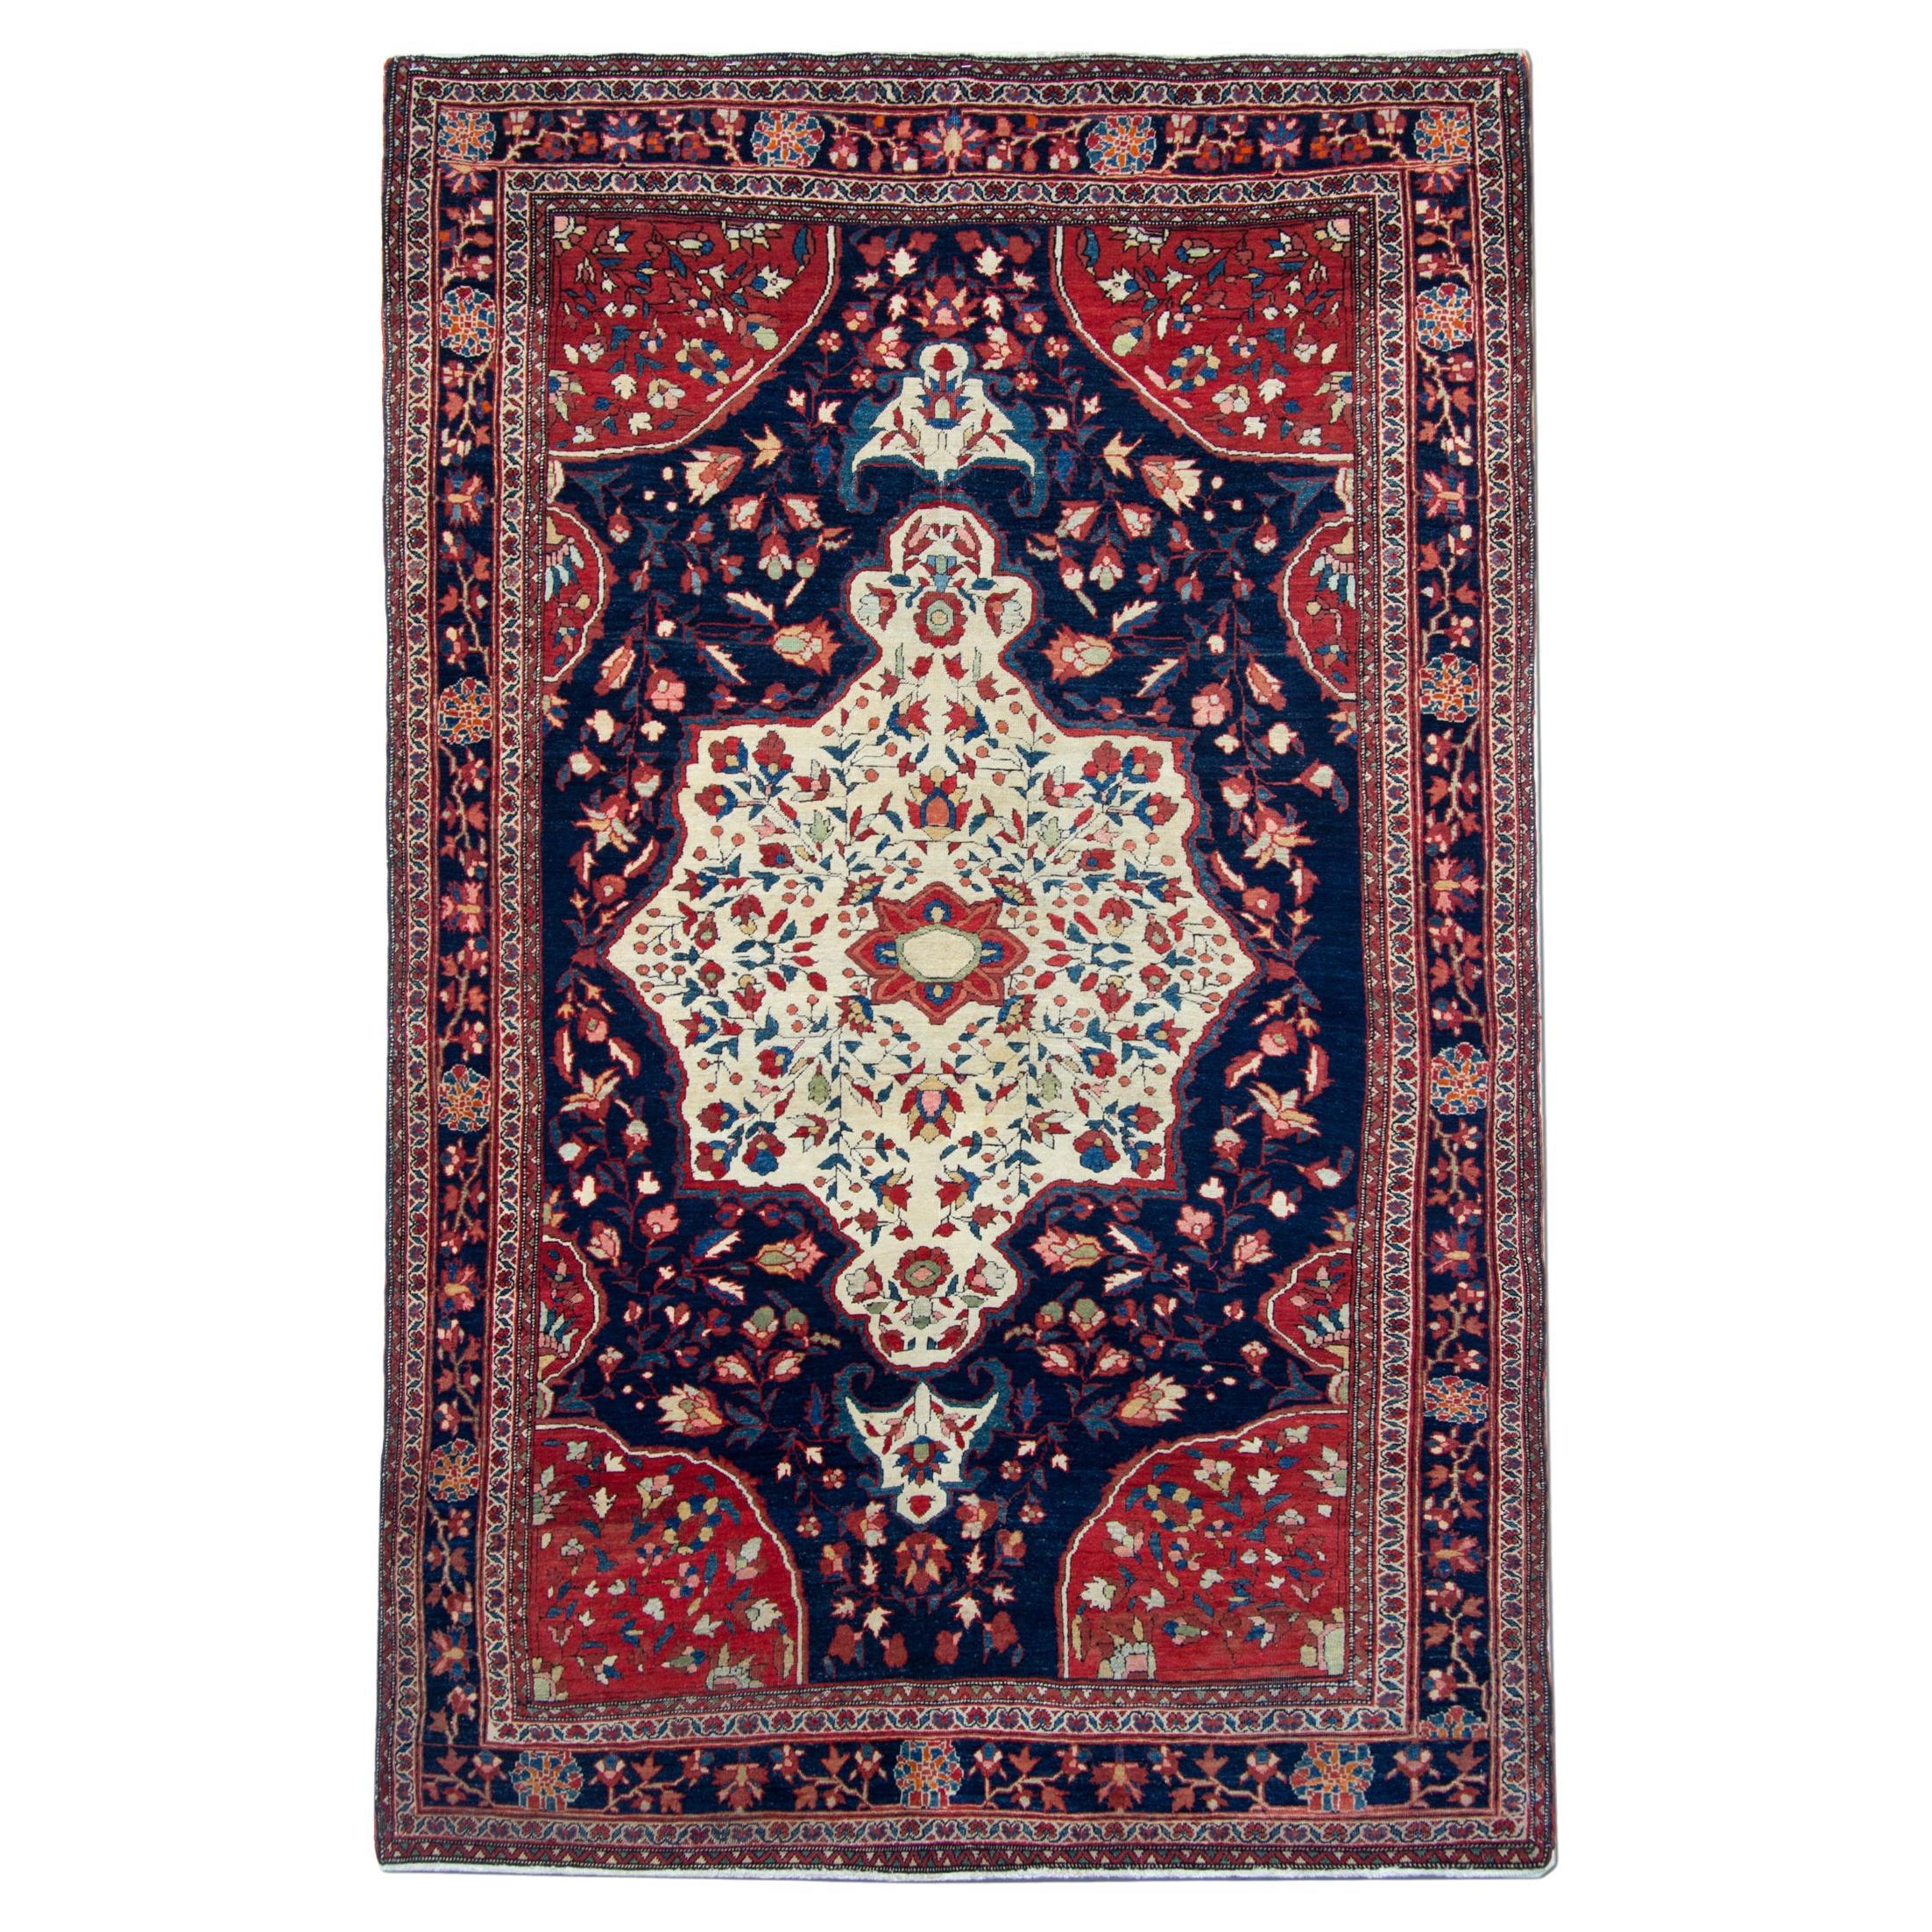 Handgefertigter antiker Teppich, traditioneller rot-blauer Wollteppich